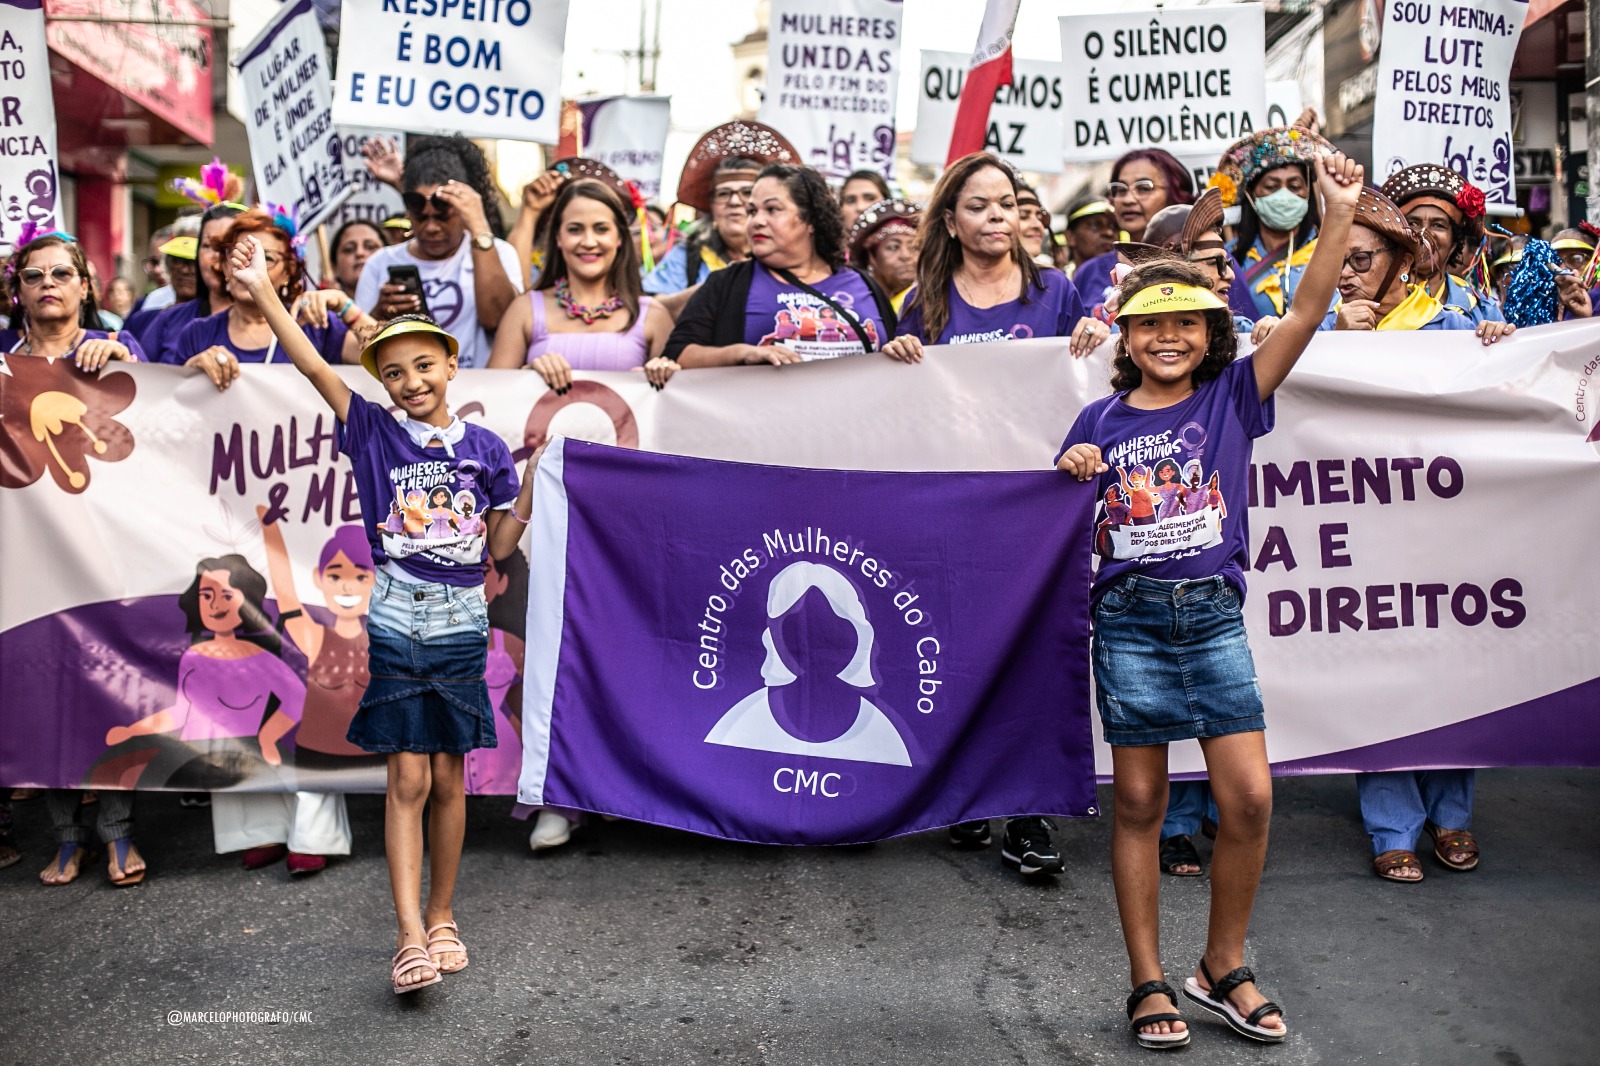 Grupo de mulheres reunidas em caminhada, carregando faixas e cartazes na cor lilás. A frente, duas meninas vestidas com saia, blusa roxa estampada e viseiras, carregando uma faixa com a logo do Centro das Mulheres do Cabo.